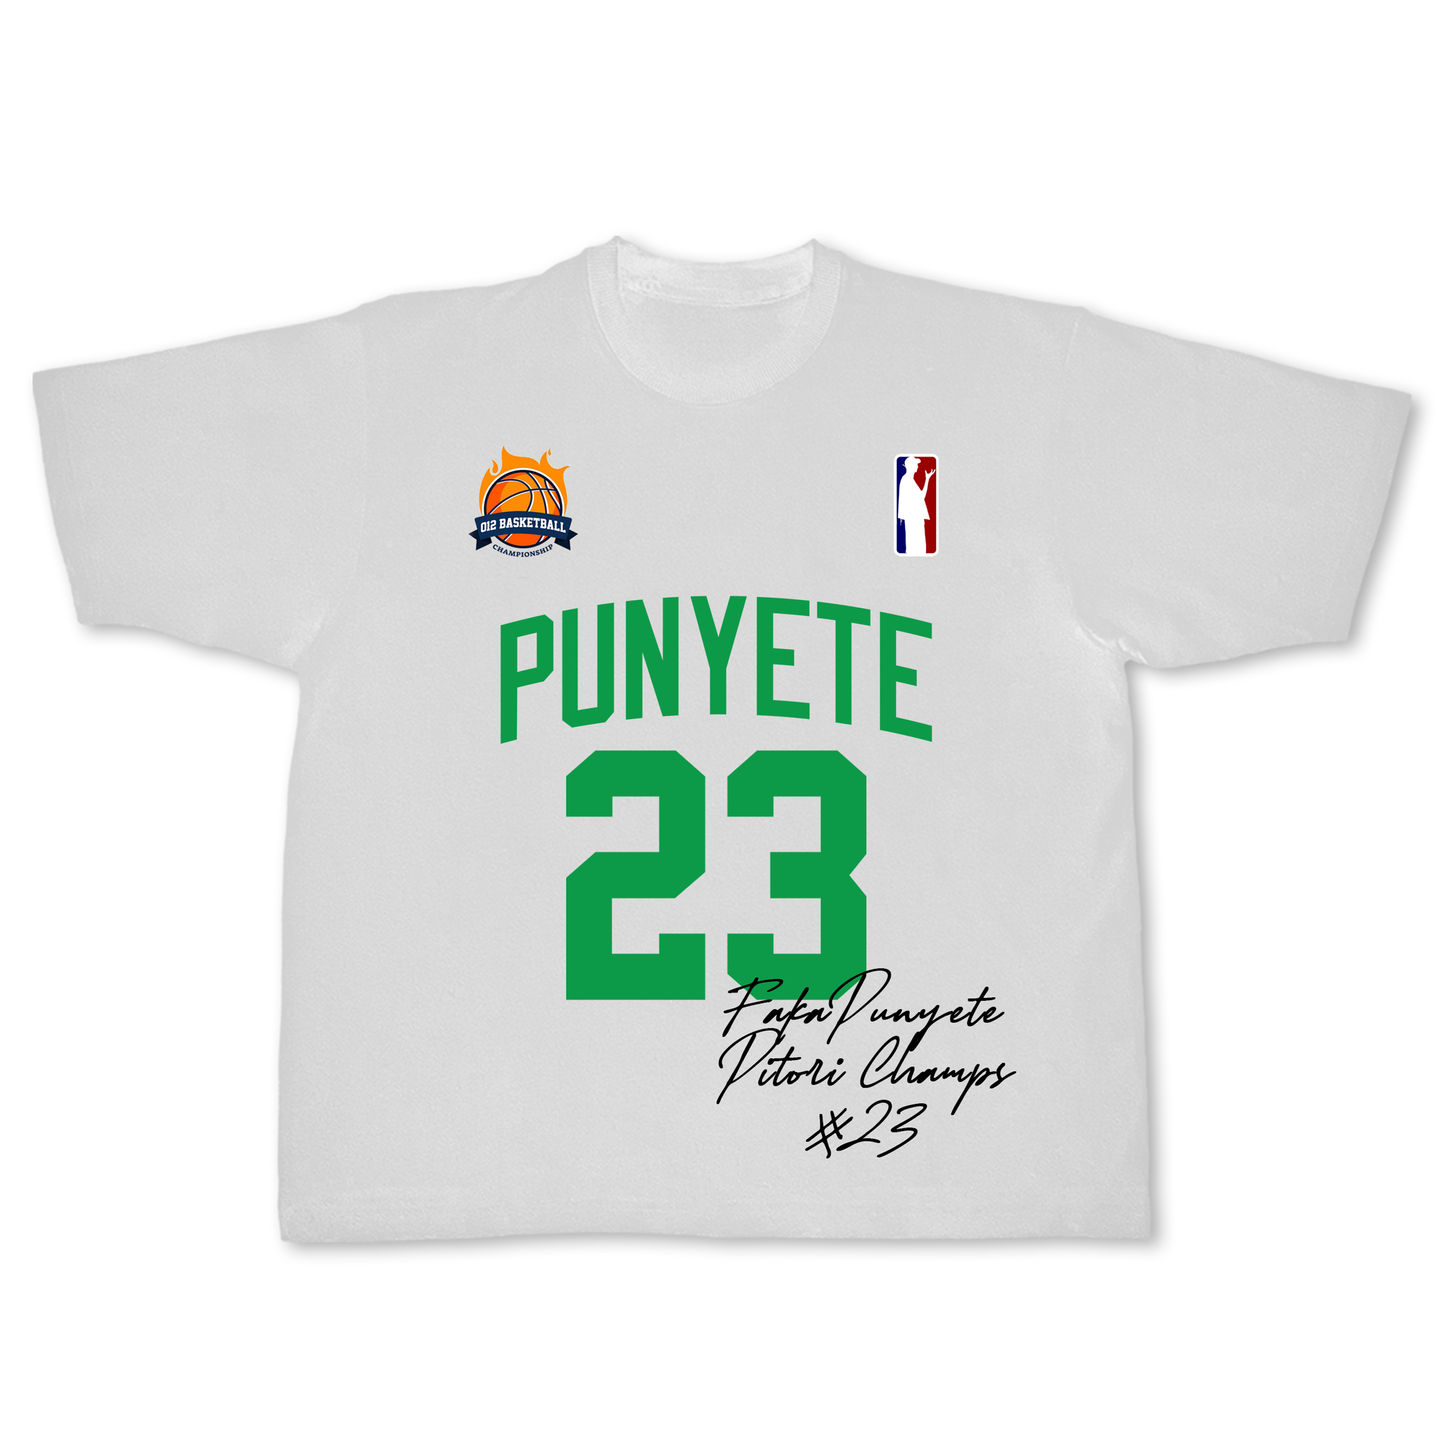 Punyete Basketball Lifestyle T-Shirt